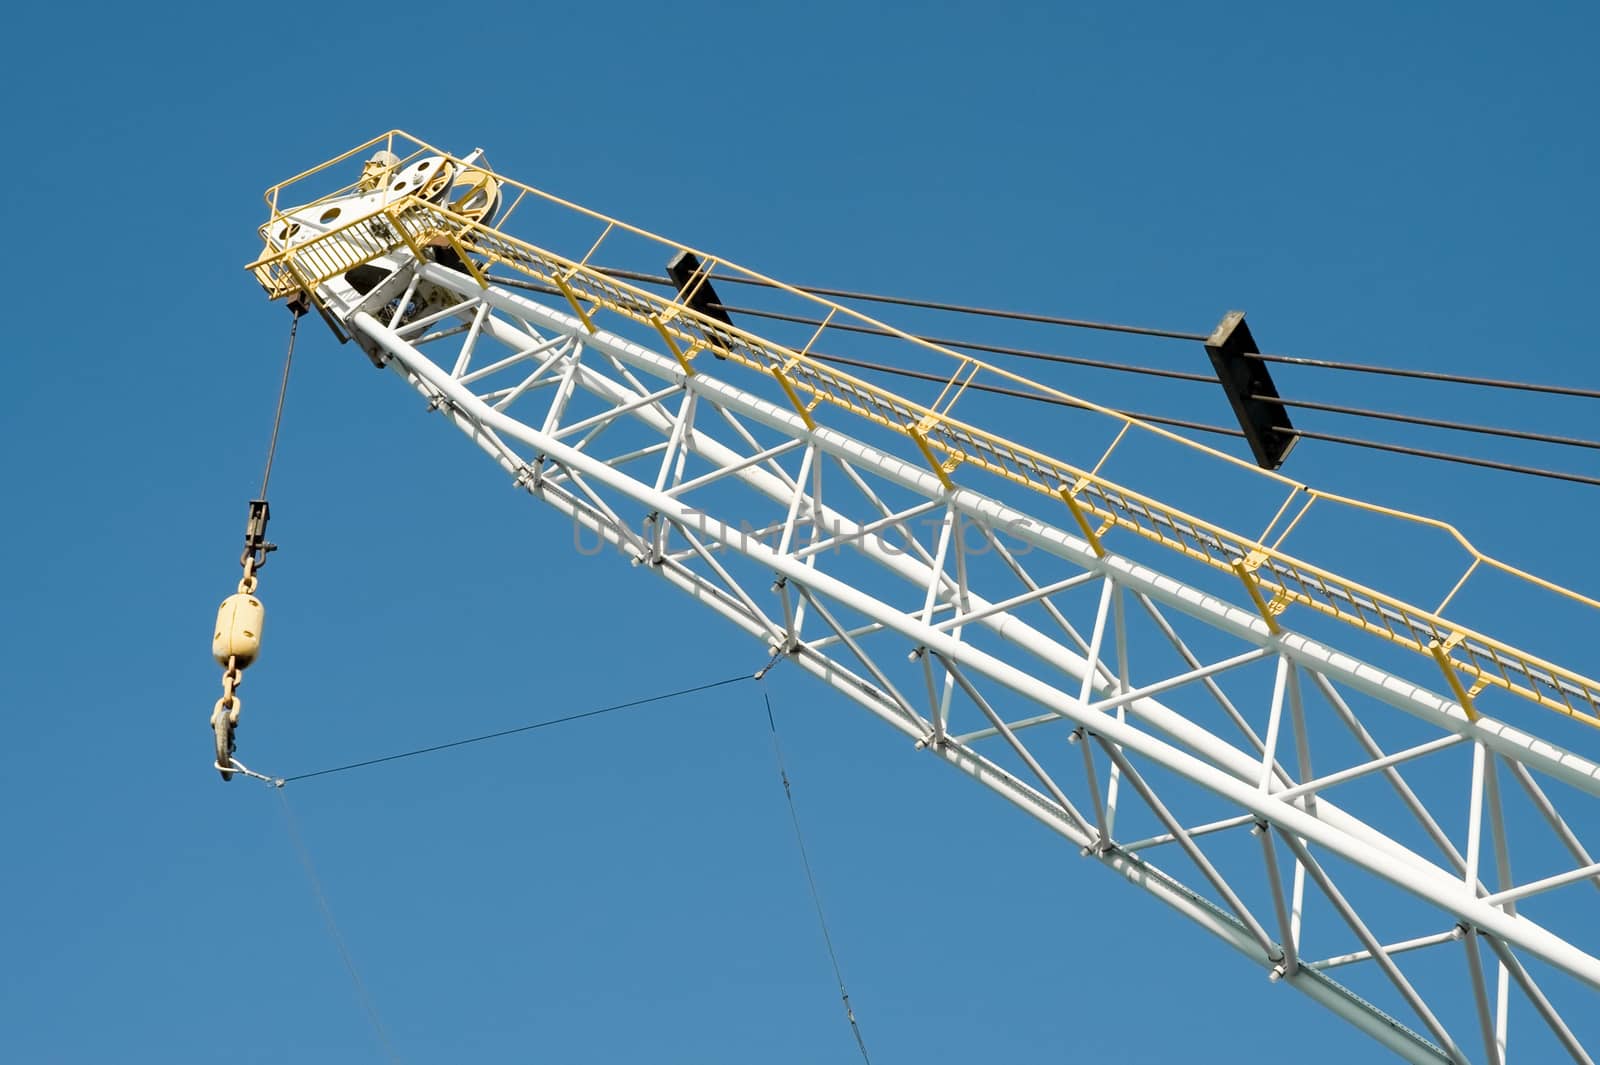 dockyard cargo crane detail against a blue sky